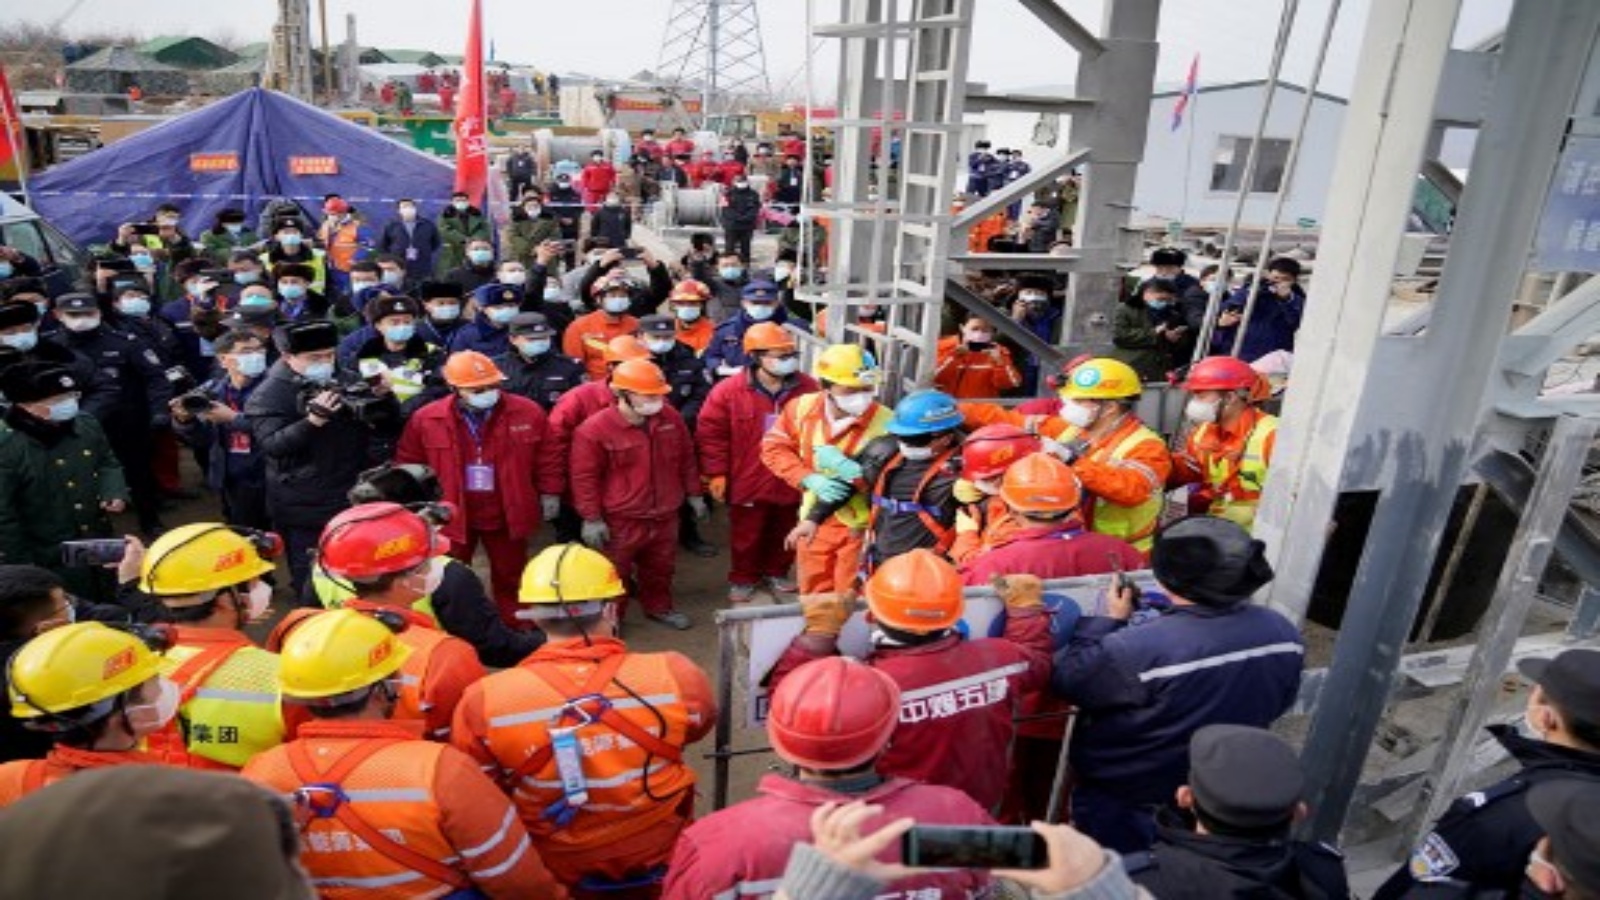 تم إنقاذ واحد من 22 عاملا صينيا من مئات الأمتار تحت الأرض حيث حوصروا لمدة أسبوعين بعد انفجار منجم ذهب في Qixia بمقاطعة شاندونغ شرق الصين في 24 يناير 2021